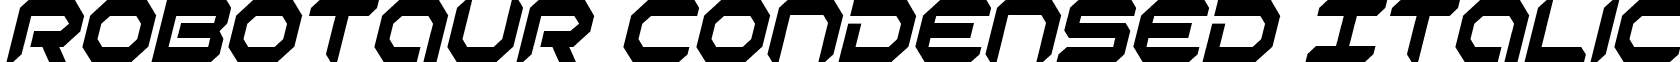 Robotaur Condensed Italic font - robotaurci.ttf